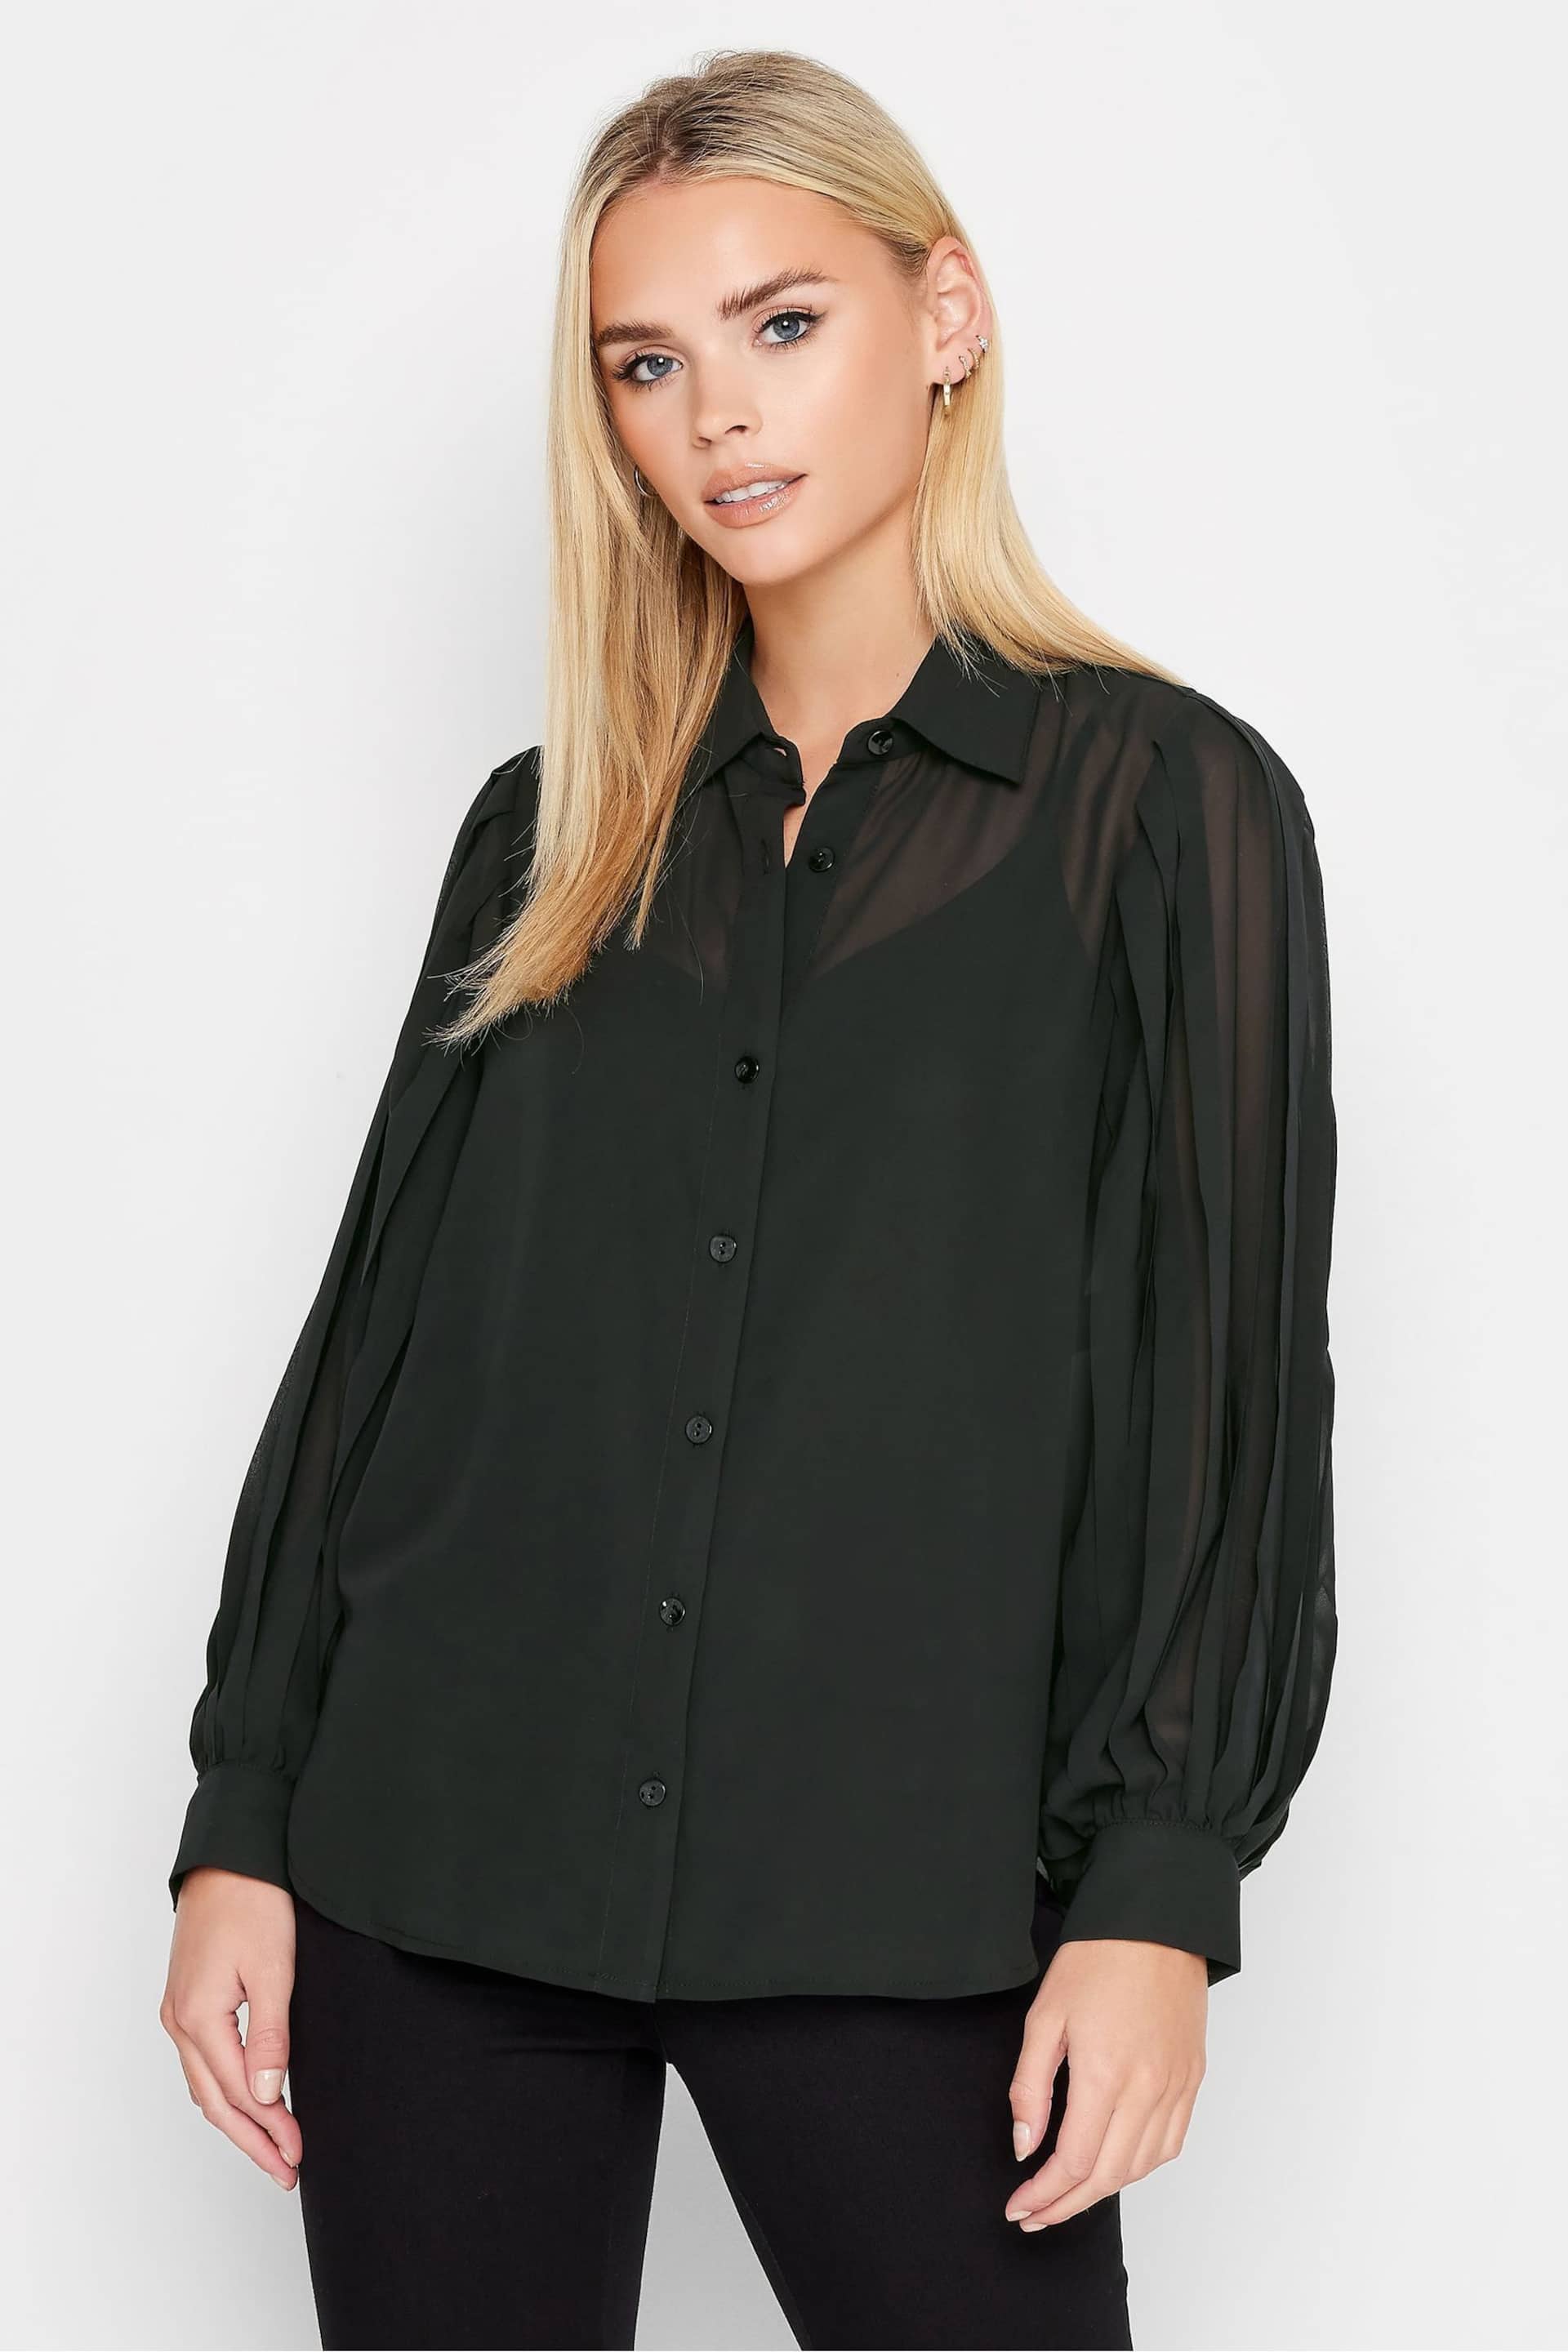 PixieGirl Petite Black Pleated Sleeve Shirt - Image 1 of 4